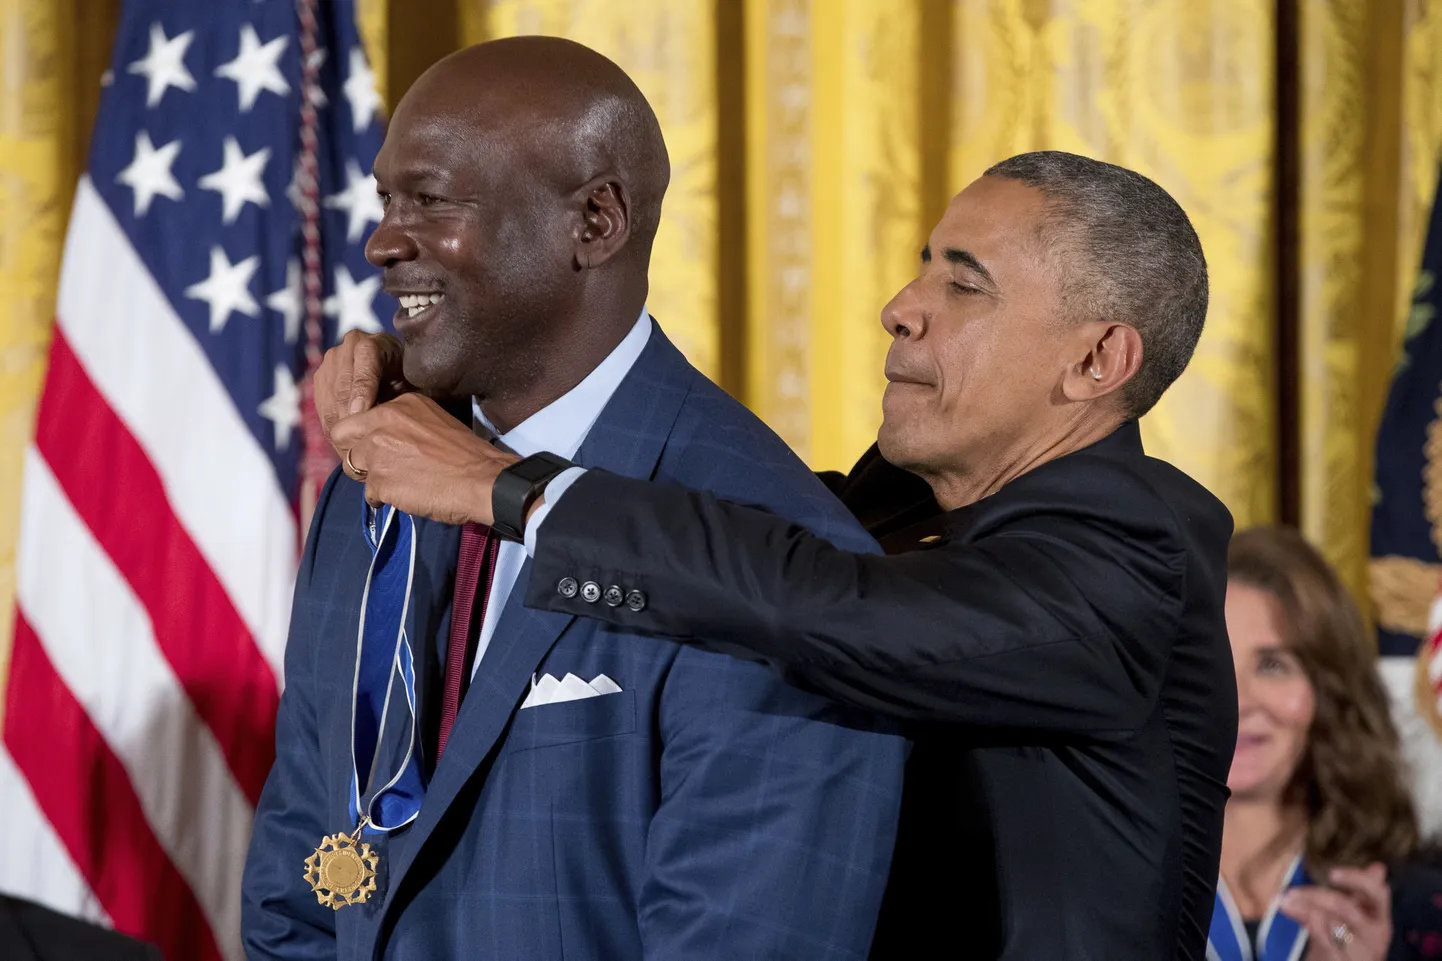 Presidendi vabaduse medali sai kaela NBA korvpalli legend Michael Jordan.